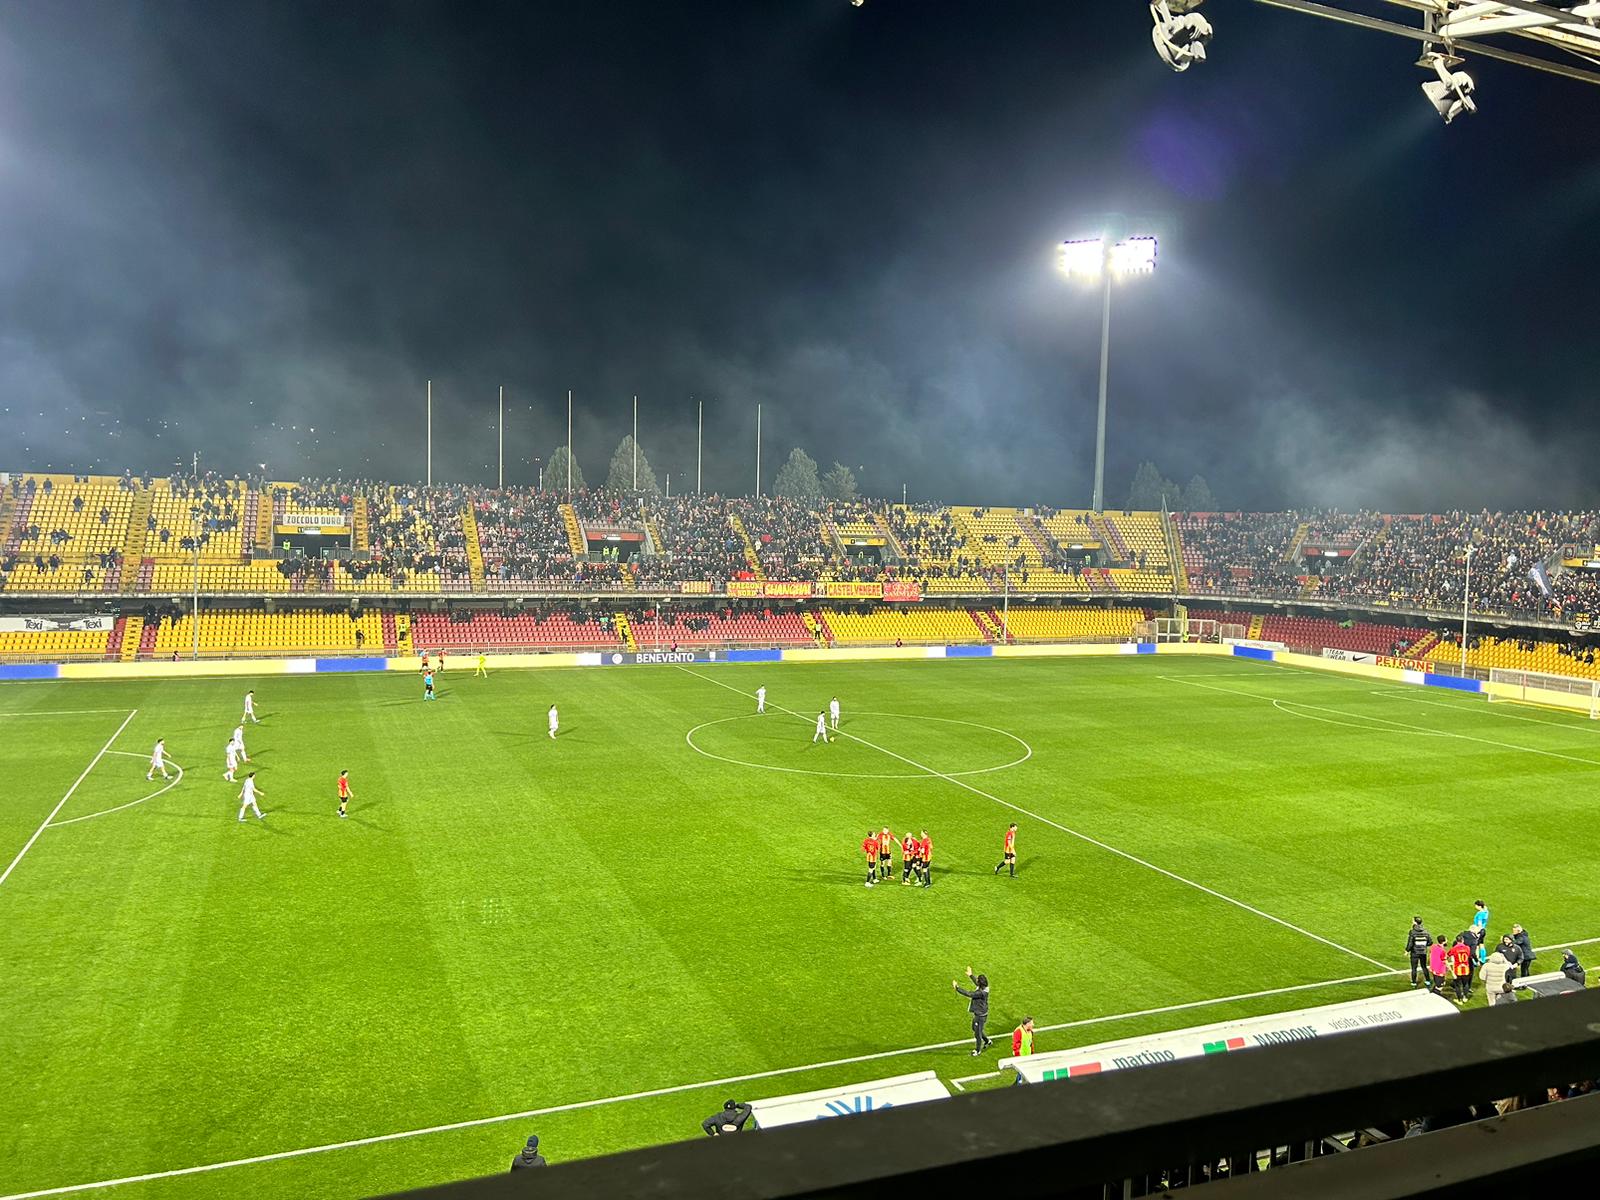 Benevento-Foggia: 1-0. Lanini firma la vittoria. La Strega accorcia dalla vetta, almeno per una notte…